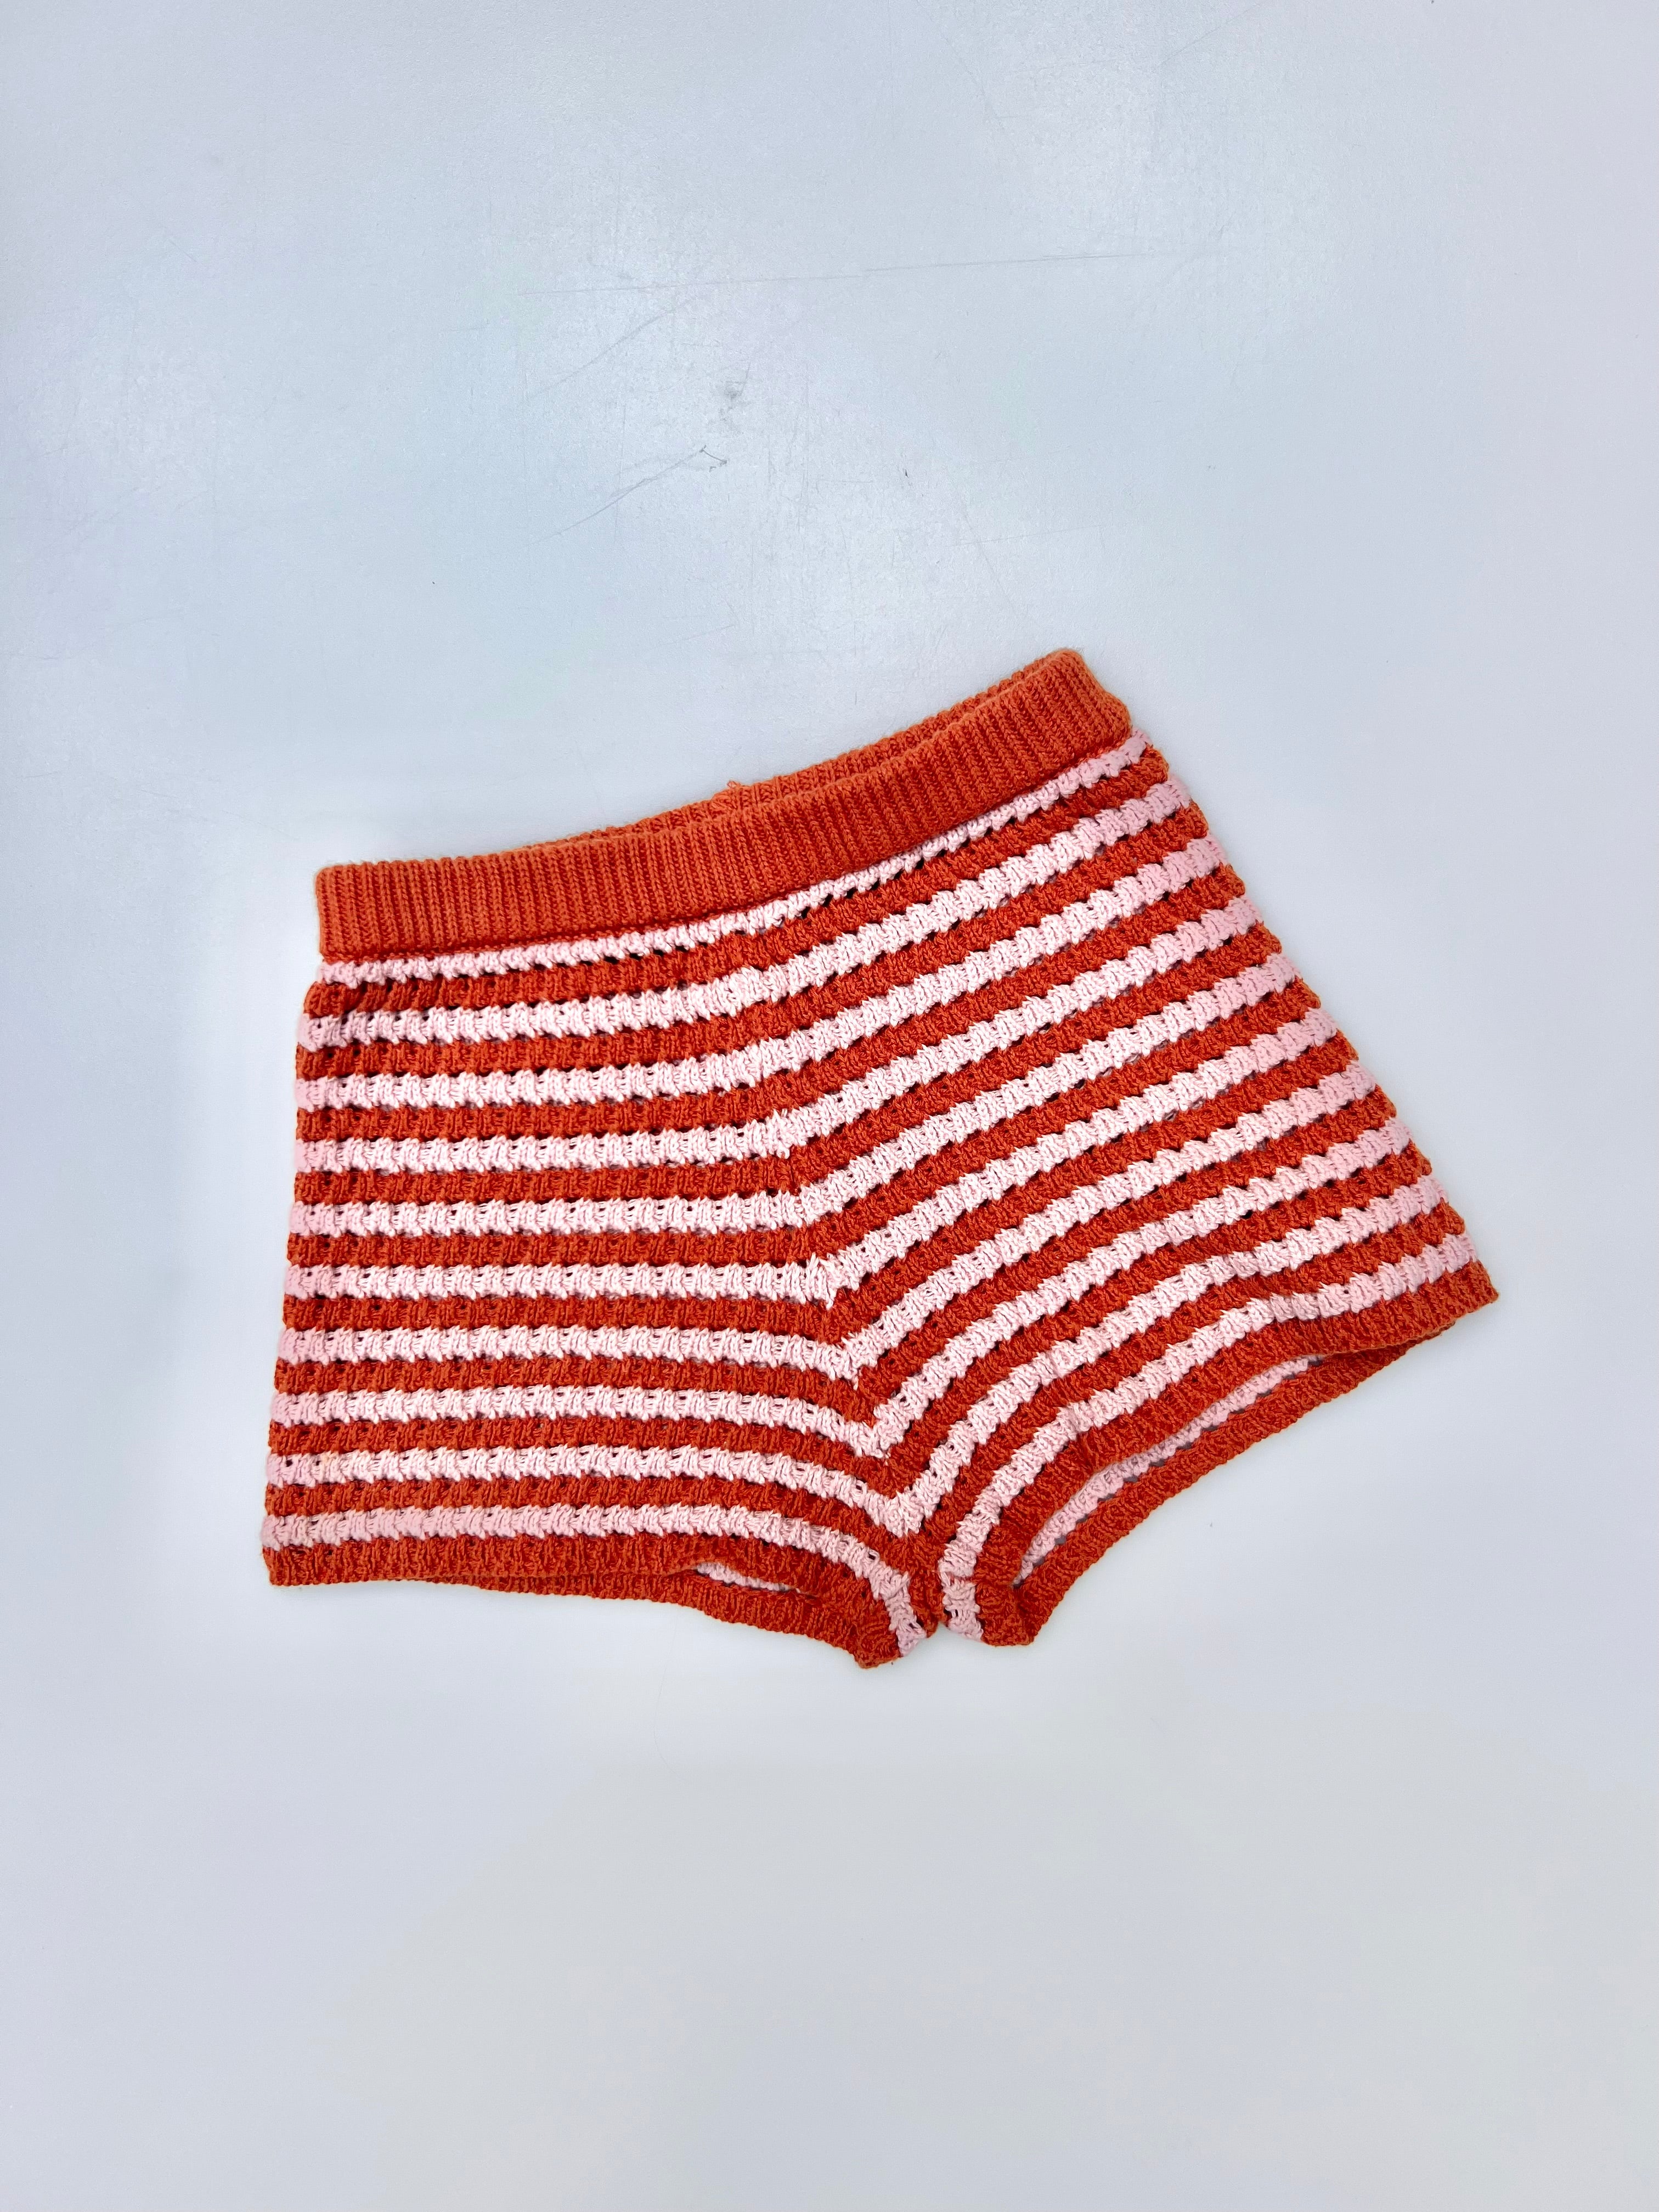 Zara Crochet Stripe Shorties Age 4-5